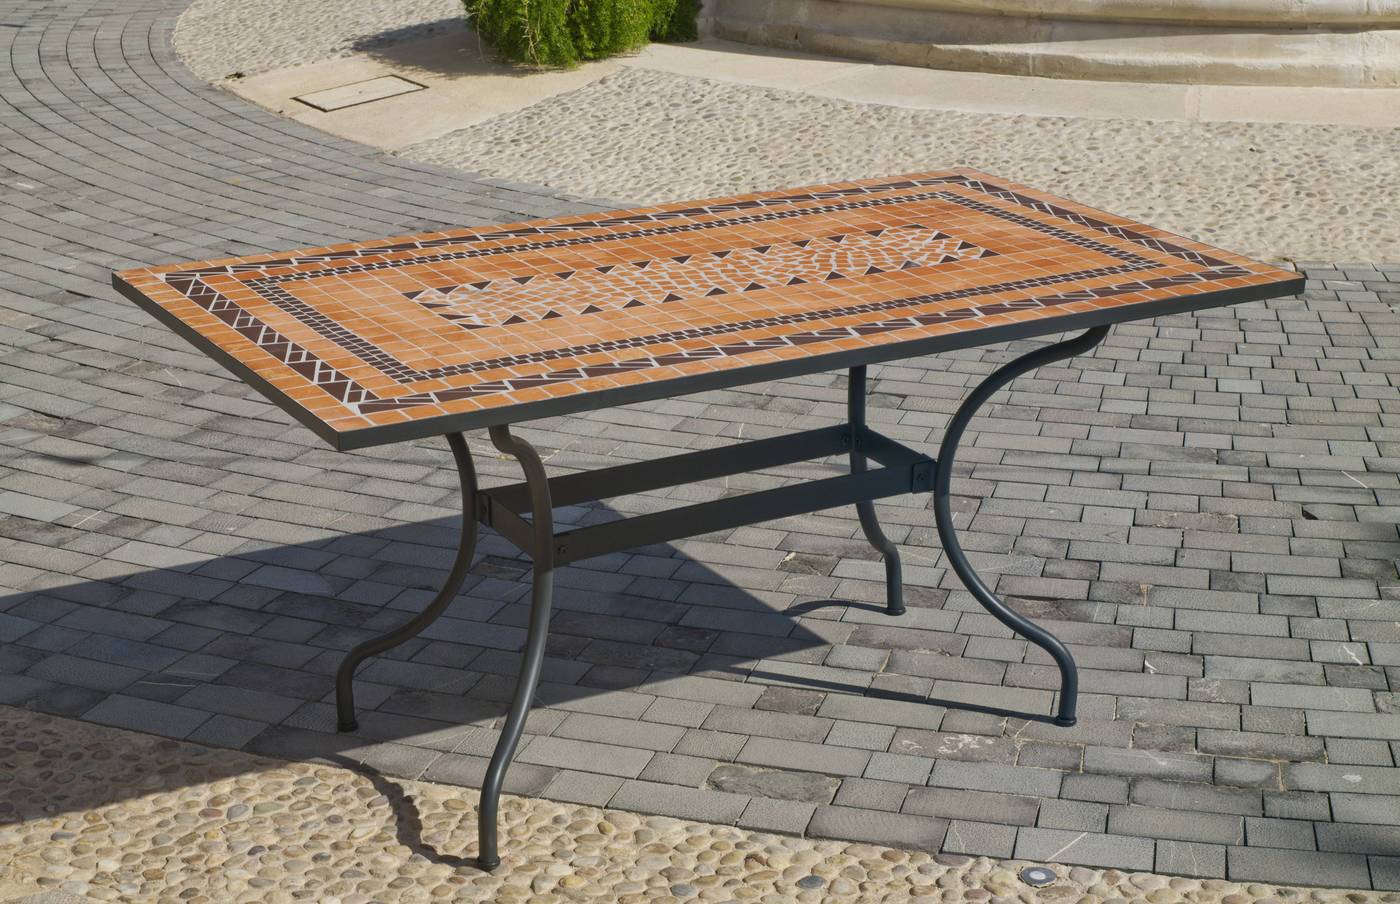 Set Mosaico Liborne-Bergamo 150-4 - Conjunto de forja color bronce: Mesa rectangular de acero forjado, con tablero mosaico de 150 cm. + 4 sillones con cojines